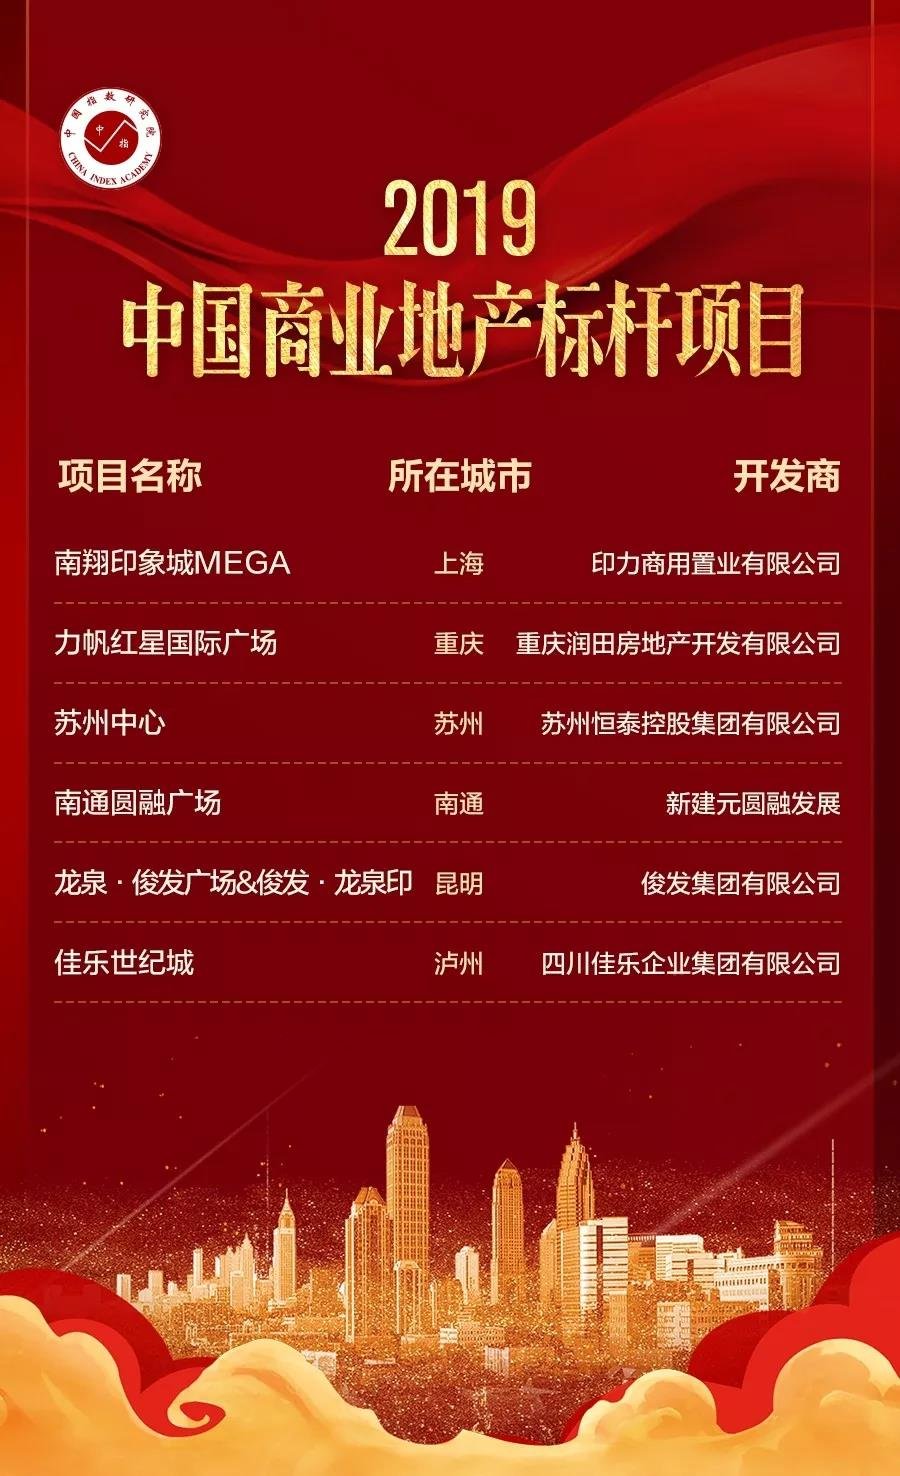 李秀英：发布2019中国商业地产样本楼盘和标杆企业名单